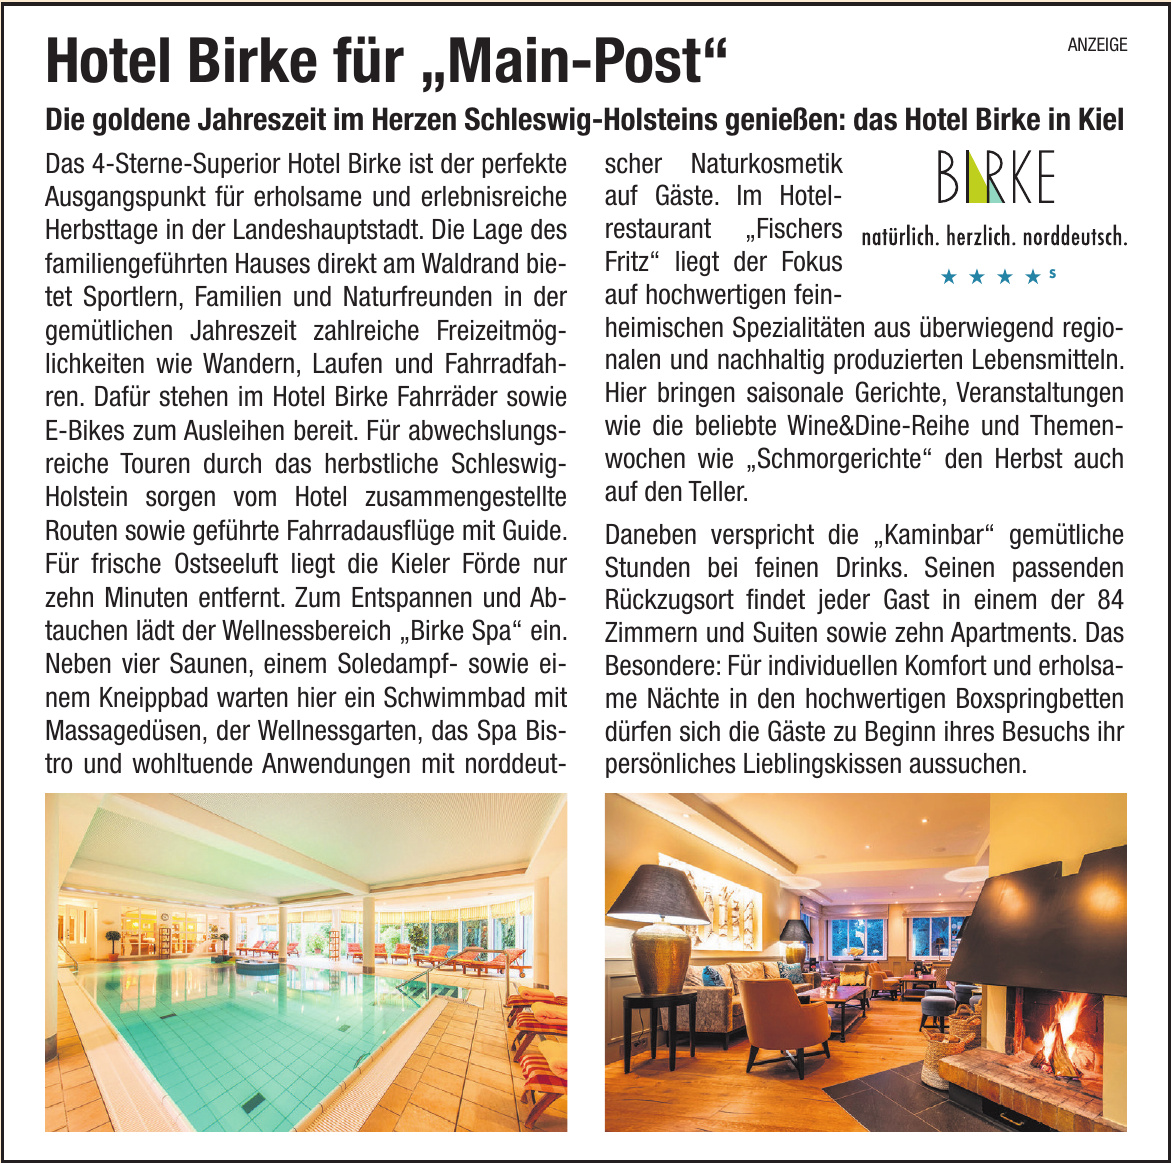 Hotel Birke für „Main-Post“ Image 5